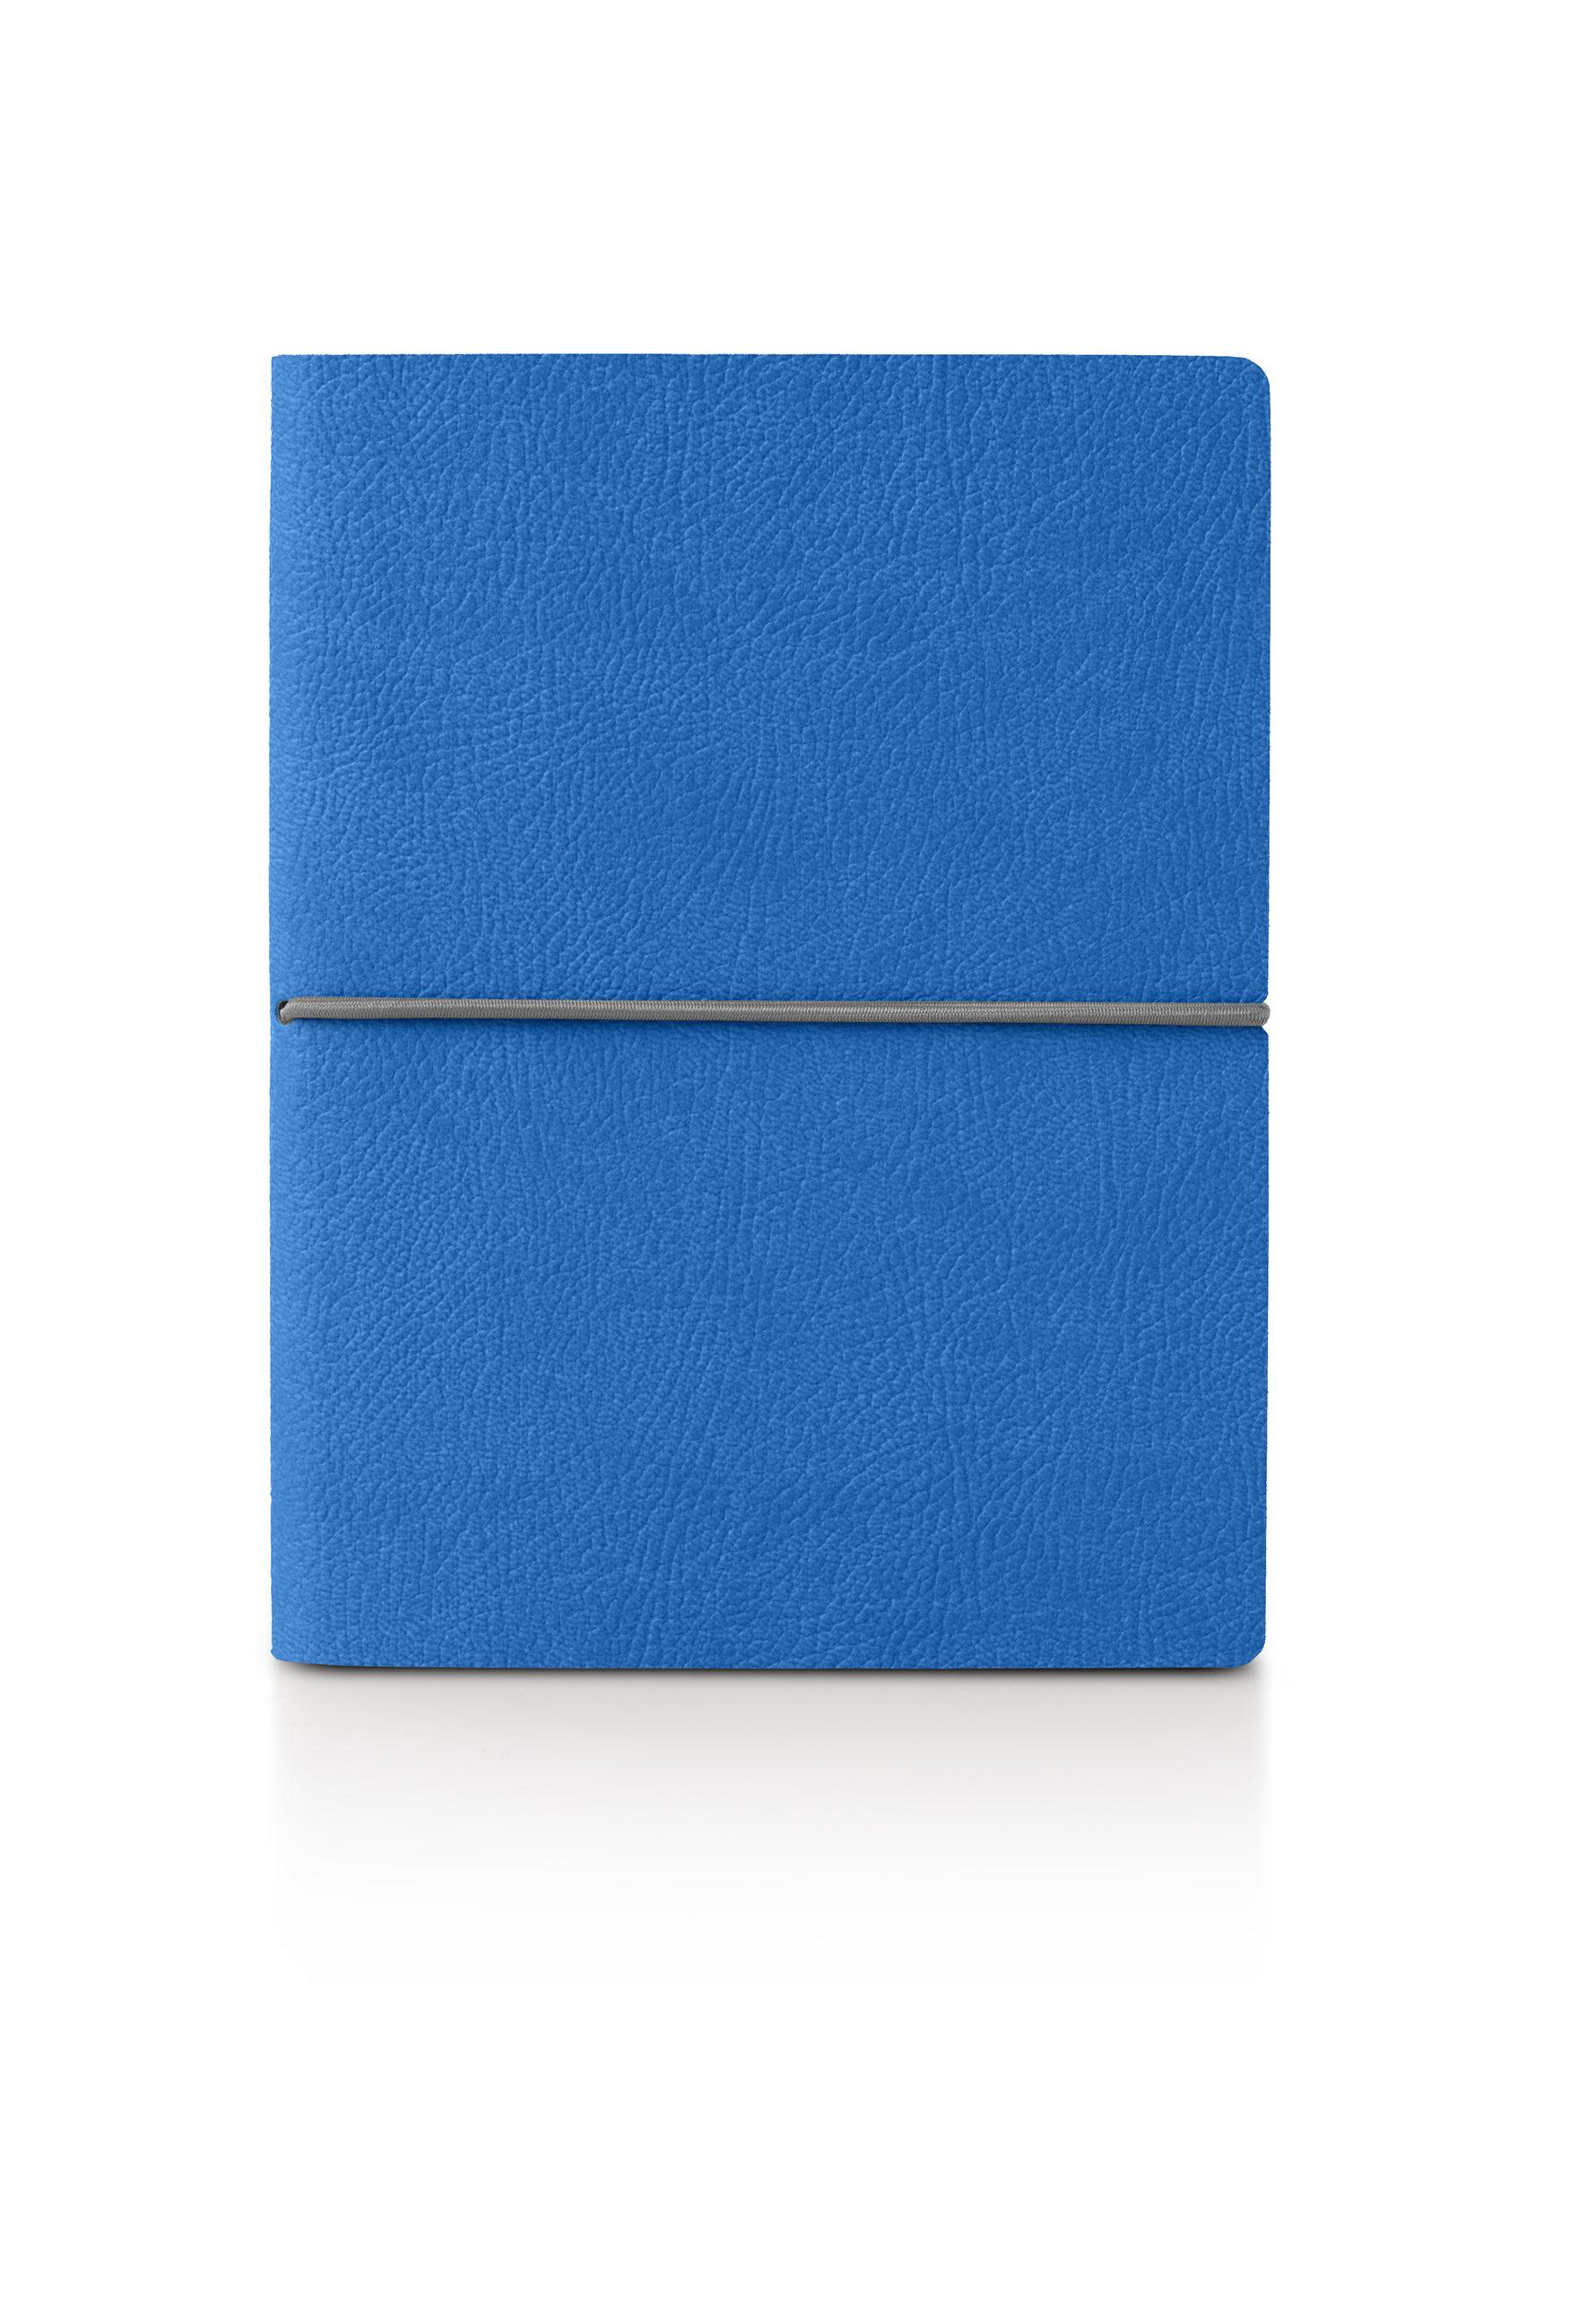 8178CK32 - Ciak SMART Notebook